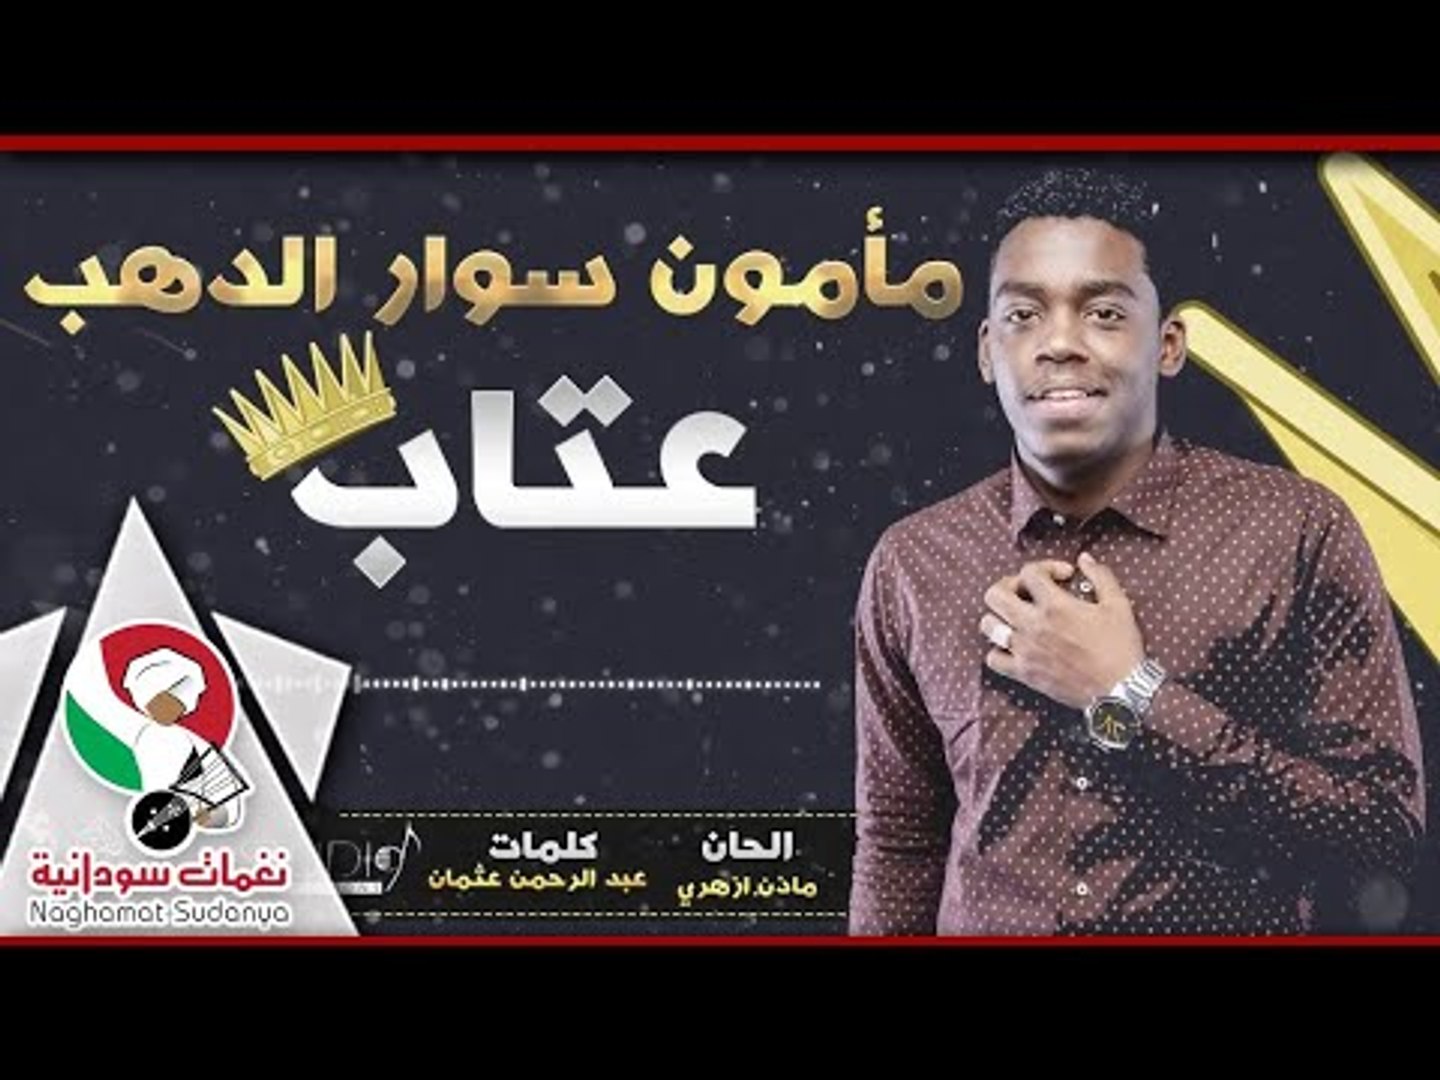 مامون سوار الدهب - عتاب | أغاني سودانية 2018 - video Dailymotion